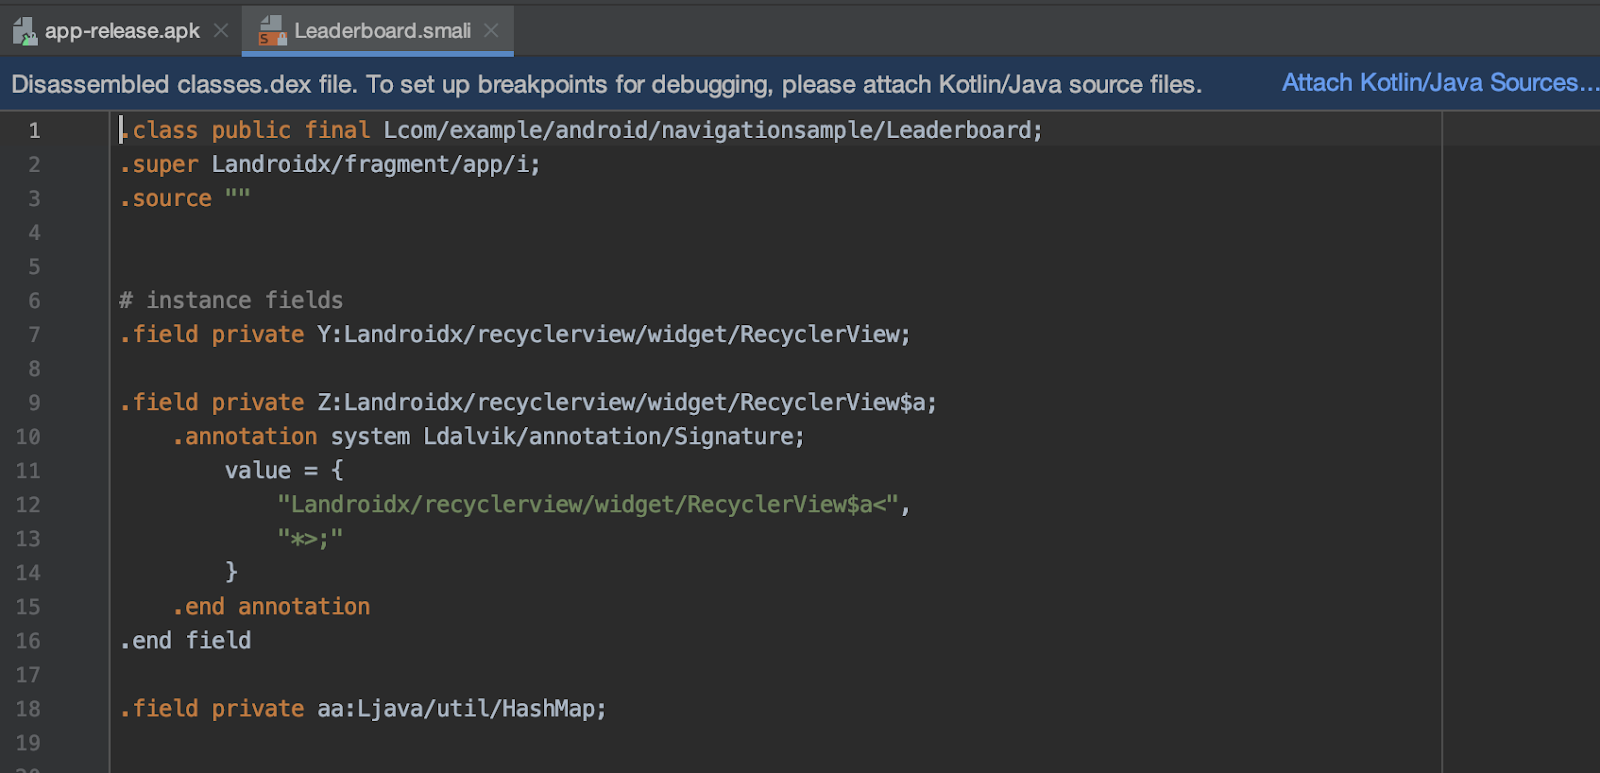 Adjuntar código fuente de Kotlin y Java a APK importados